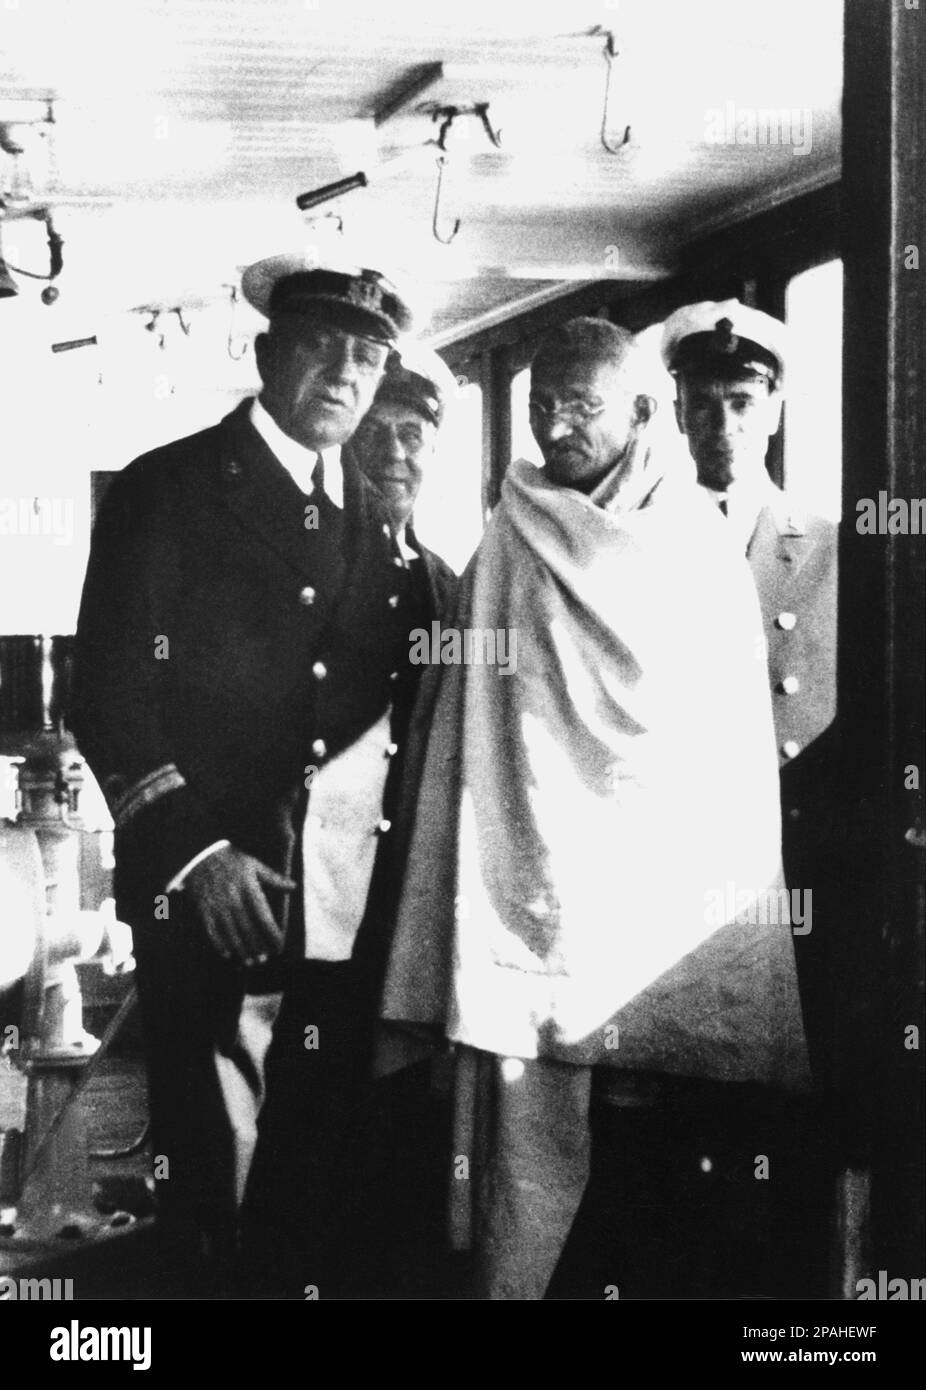 1931 : le chef pacifiste indien MAHATMA GANDHI ( Mohandas Karamchand Gandhi , 1869 - 1948 ) était un chef politique et spirituel majeur de l'Inde et du mouvement d'indépendance indien. Il a été le pionnier de Satyagraha — la résistance à la tyrannie par la désobéissance civile de masse, fermement fondée sur l'ahimsa ou la non-violence totale — qui a conduit l'Inde à l'indépendance et a inspiré des mouvements pour les droits civils et la liberté dans le monde entier. Dans cette photo à la frontière du bateau italien PILSNA , propriété de LLOYD TRIESTINO . Gandhi a été nominé cinq fois pour le Prix Nobel de la paix, en 1937, 1938, 1939,1947 et fina Banque D'Images